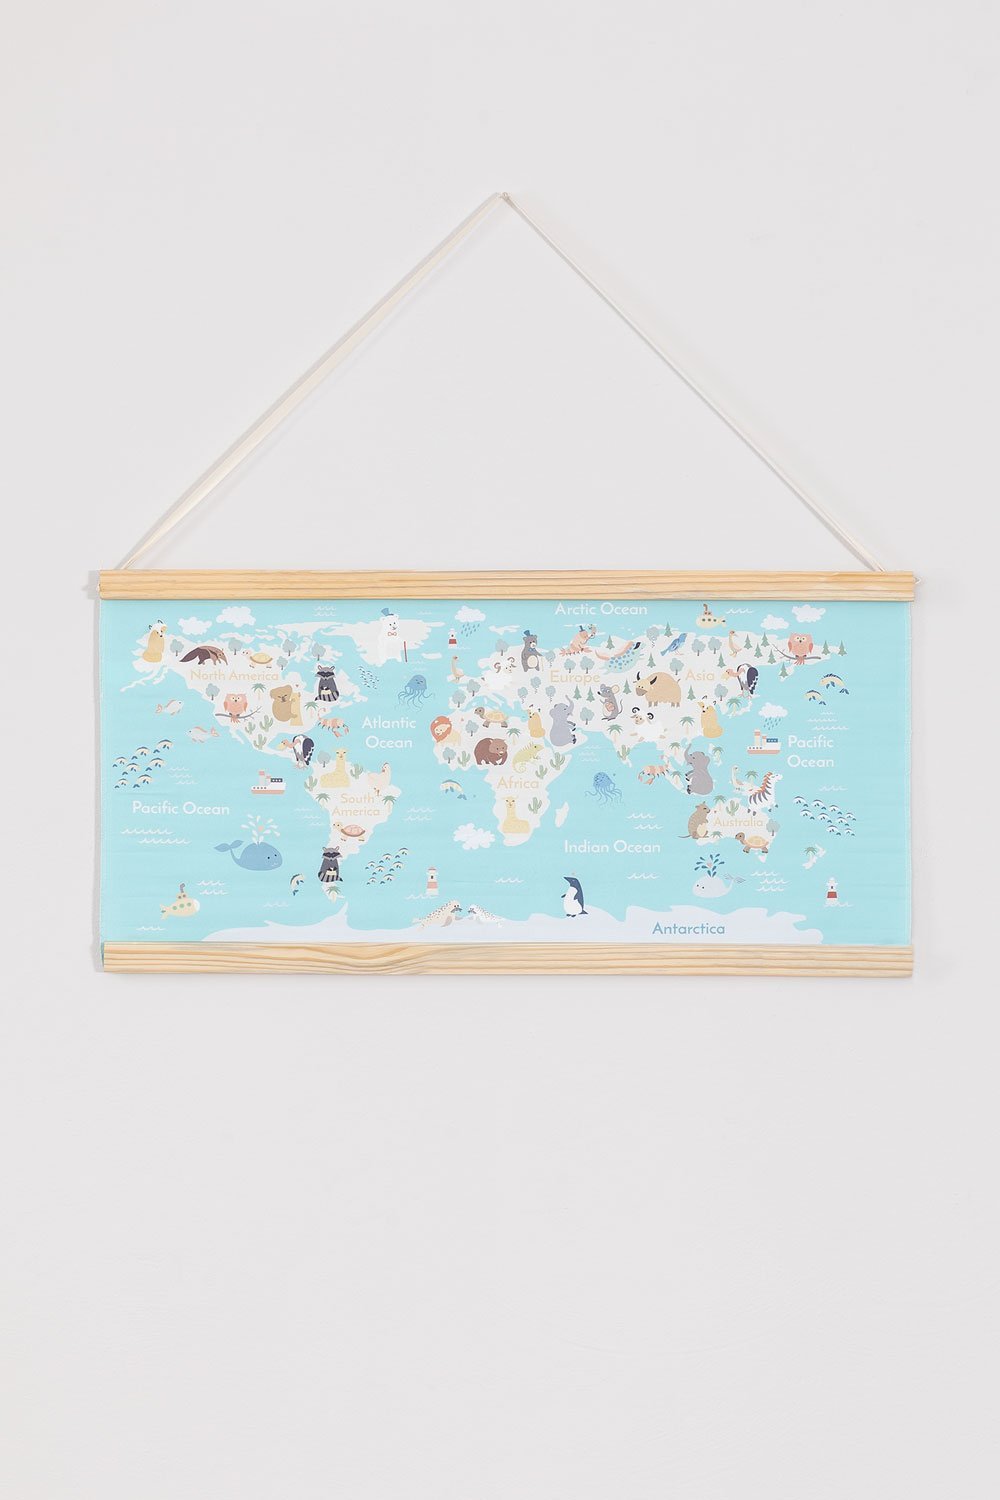 Decoratieve wereldkaart voor kinderen , galerij beeld 2116162